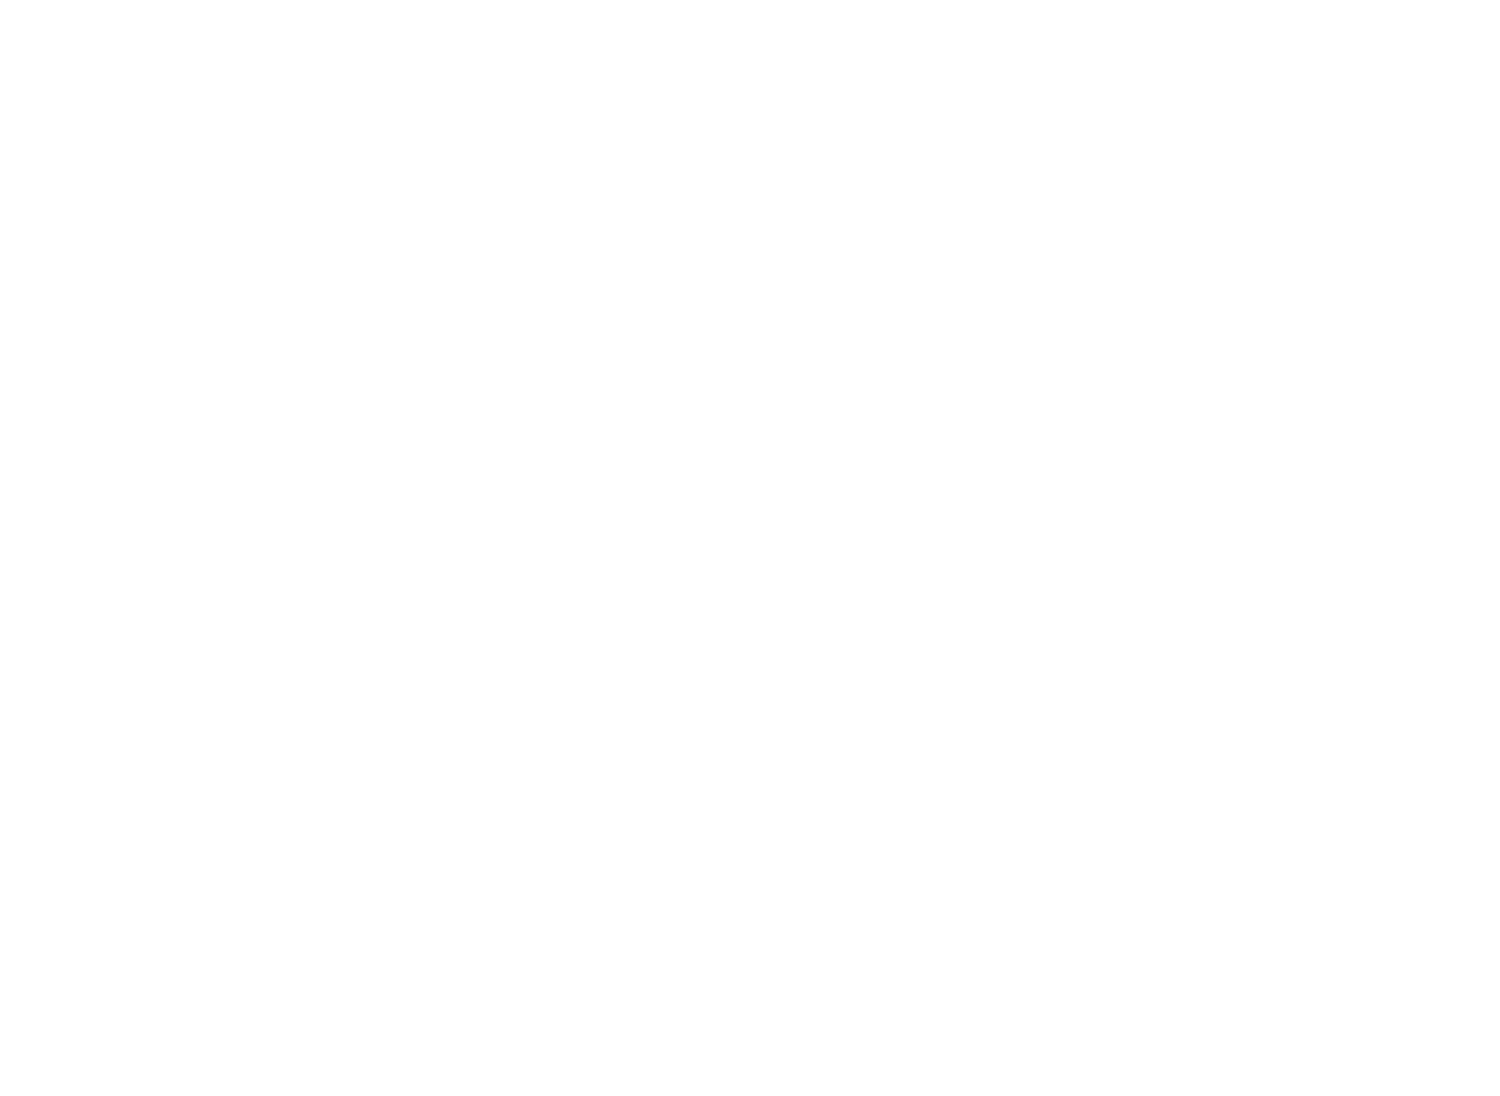 SHELLEY RUFFIN